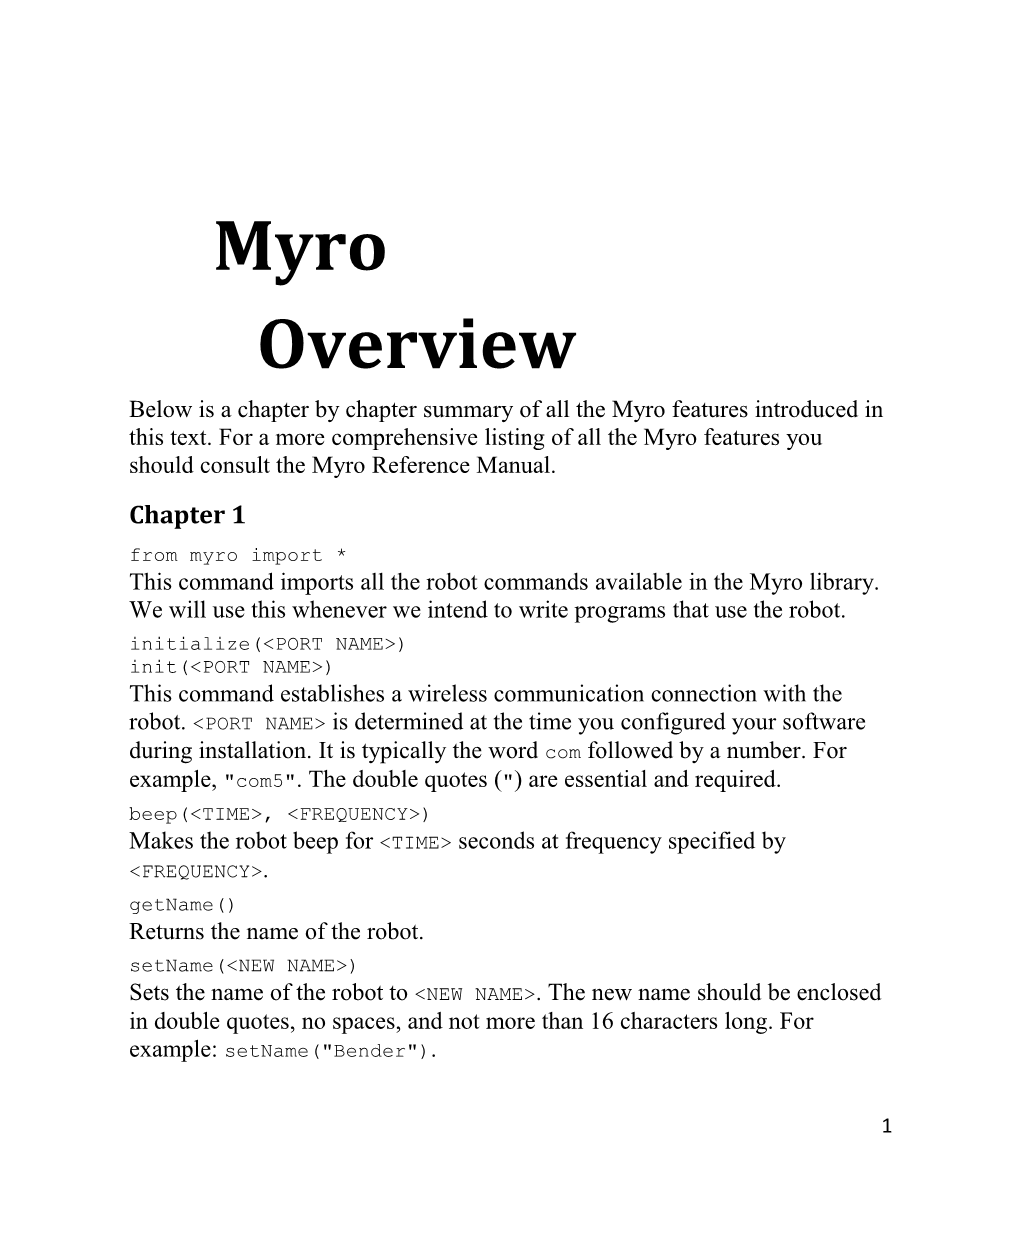 Myro Overview